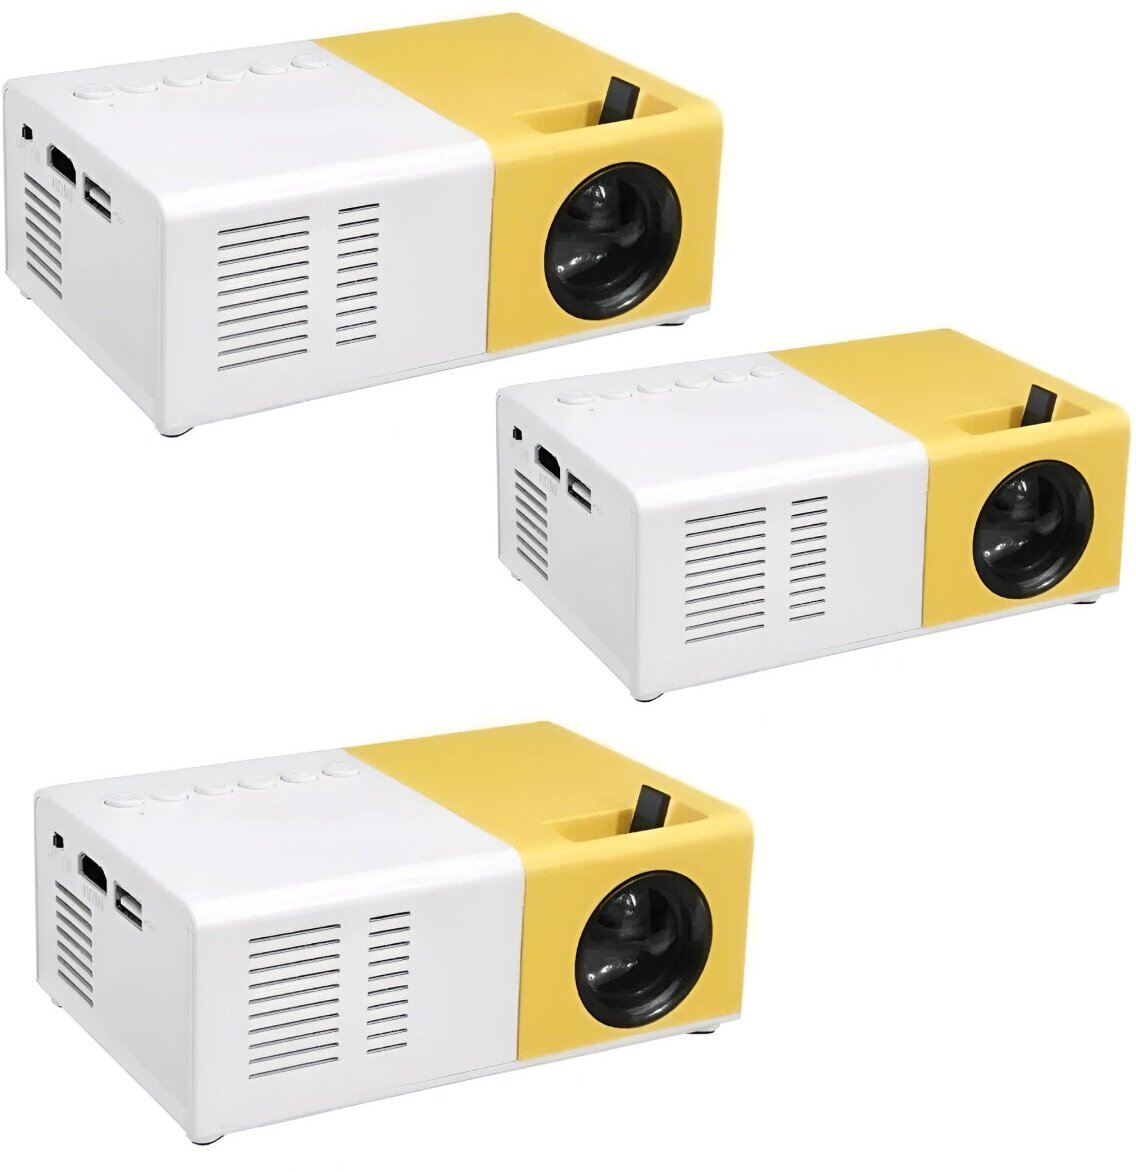 LED мини-проектор беспроводной Unic YG-300 с поддержкой HD видео портативный с пультом ДУ и аккумулятор в комплекте (корпус бело-желтый) комплект 3 ШТ